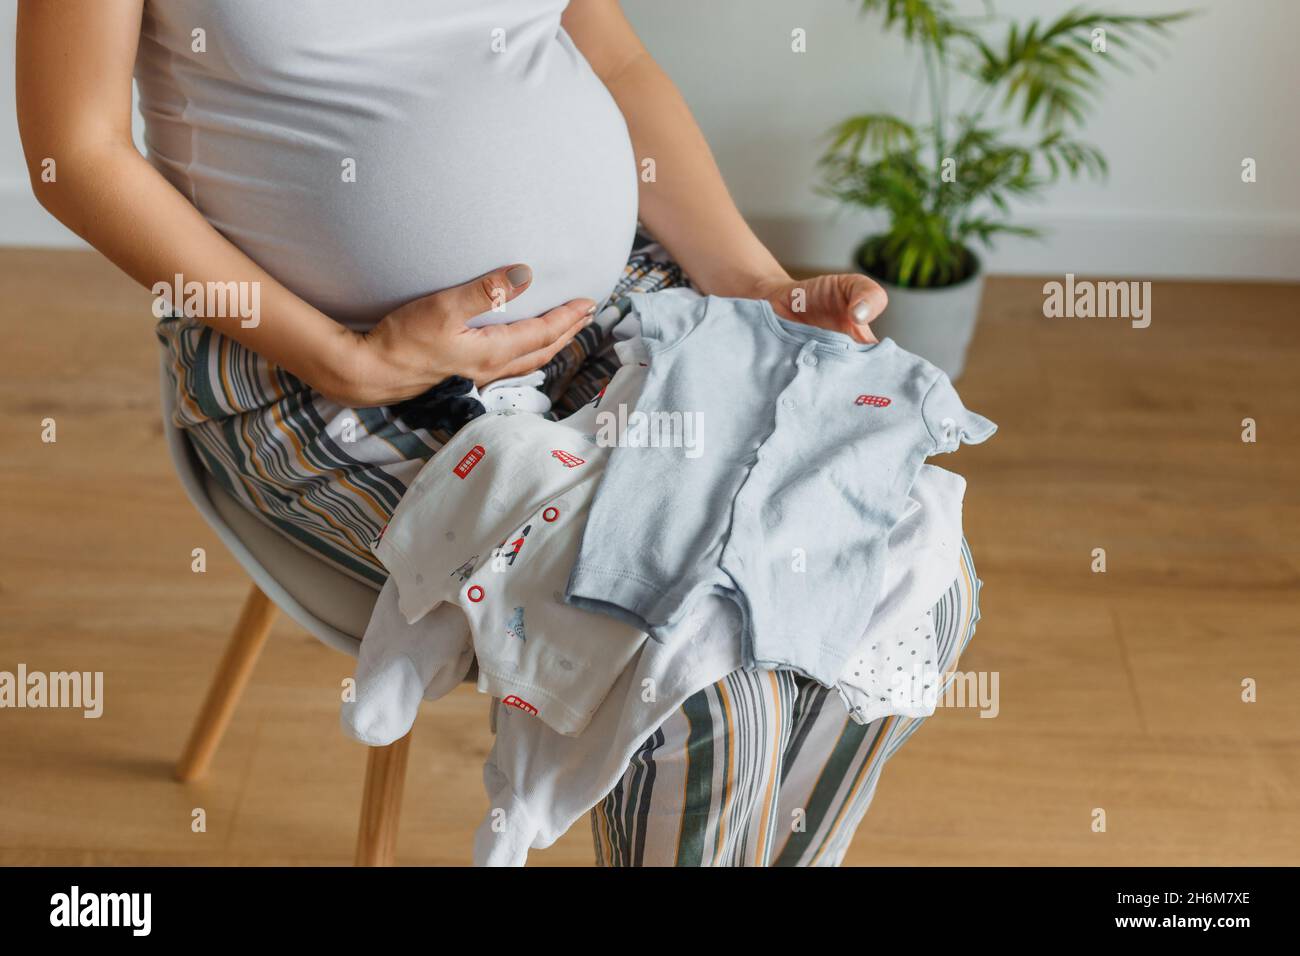 Femme blonde enceinte regardant sur de petits vêtements pour son bébé.Bonne future mère tenant dans les mains mignon vêtements de corps pour nouveau-né.Concept de la parentalité Banque D'Images